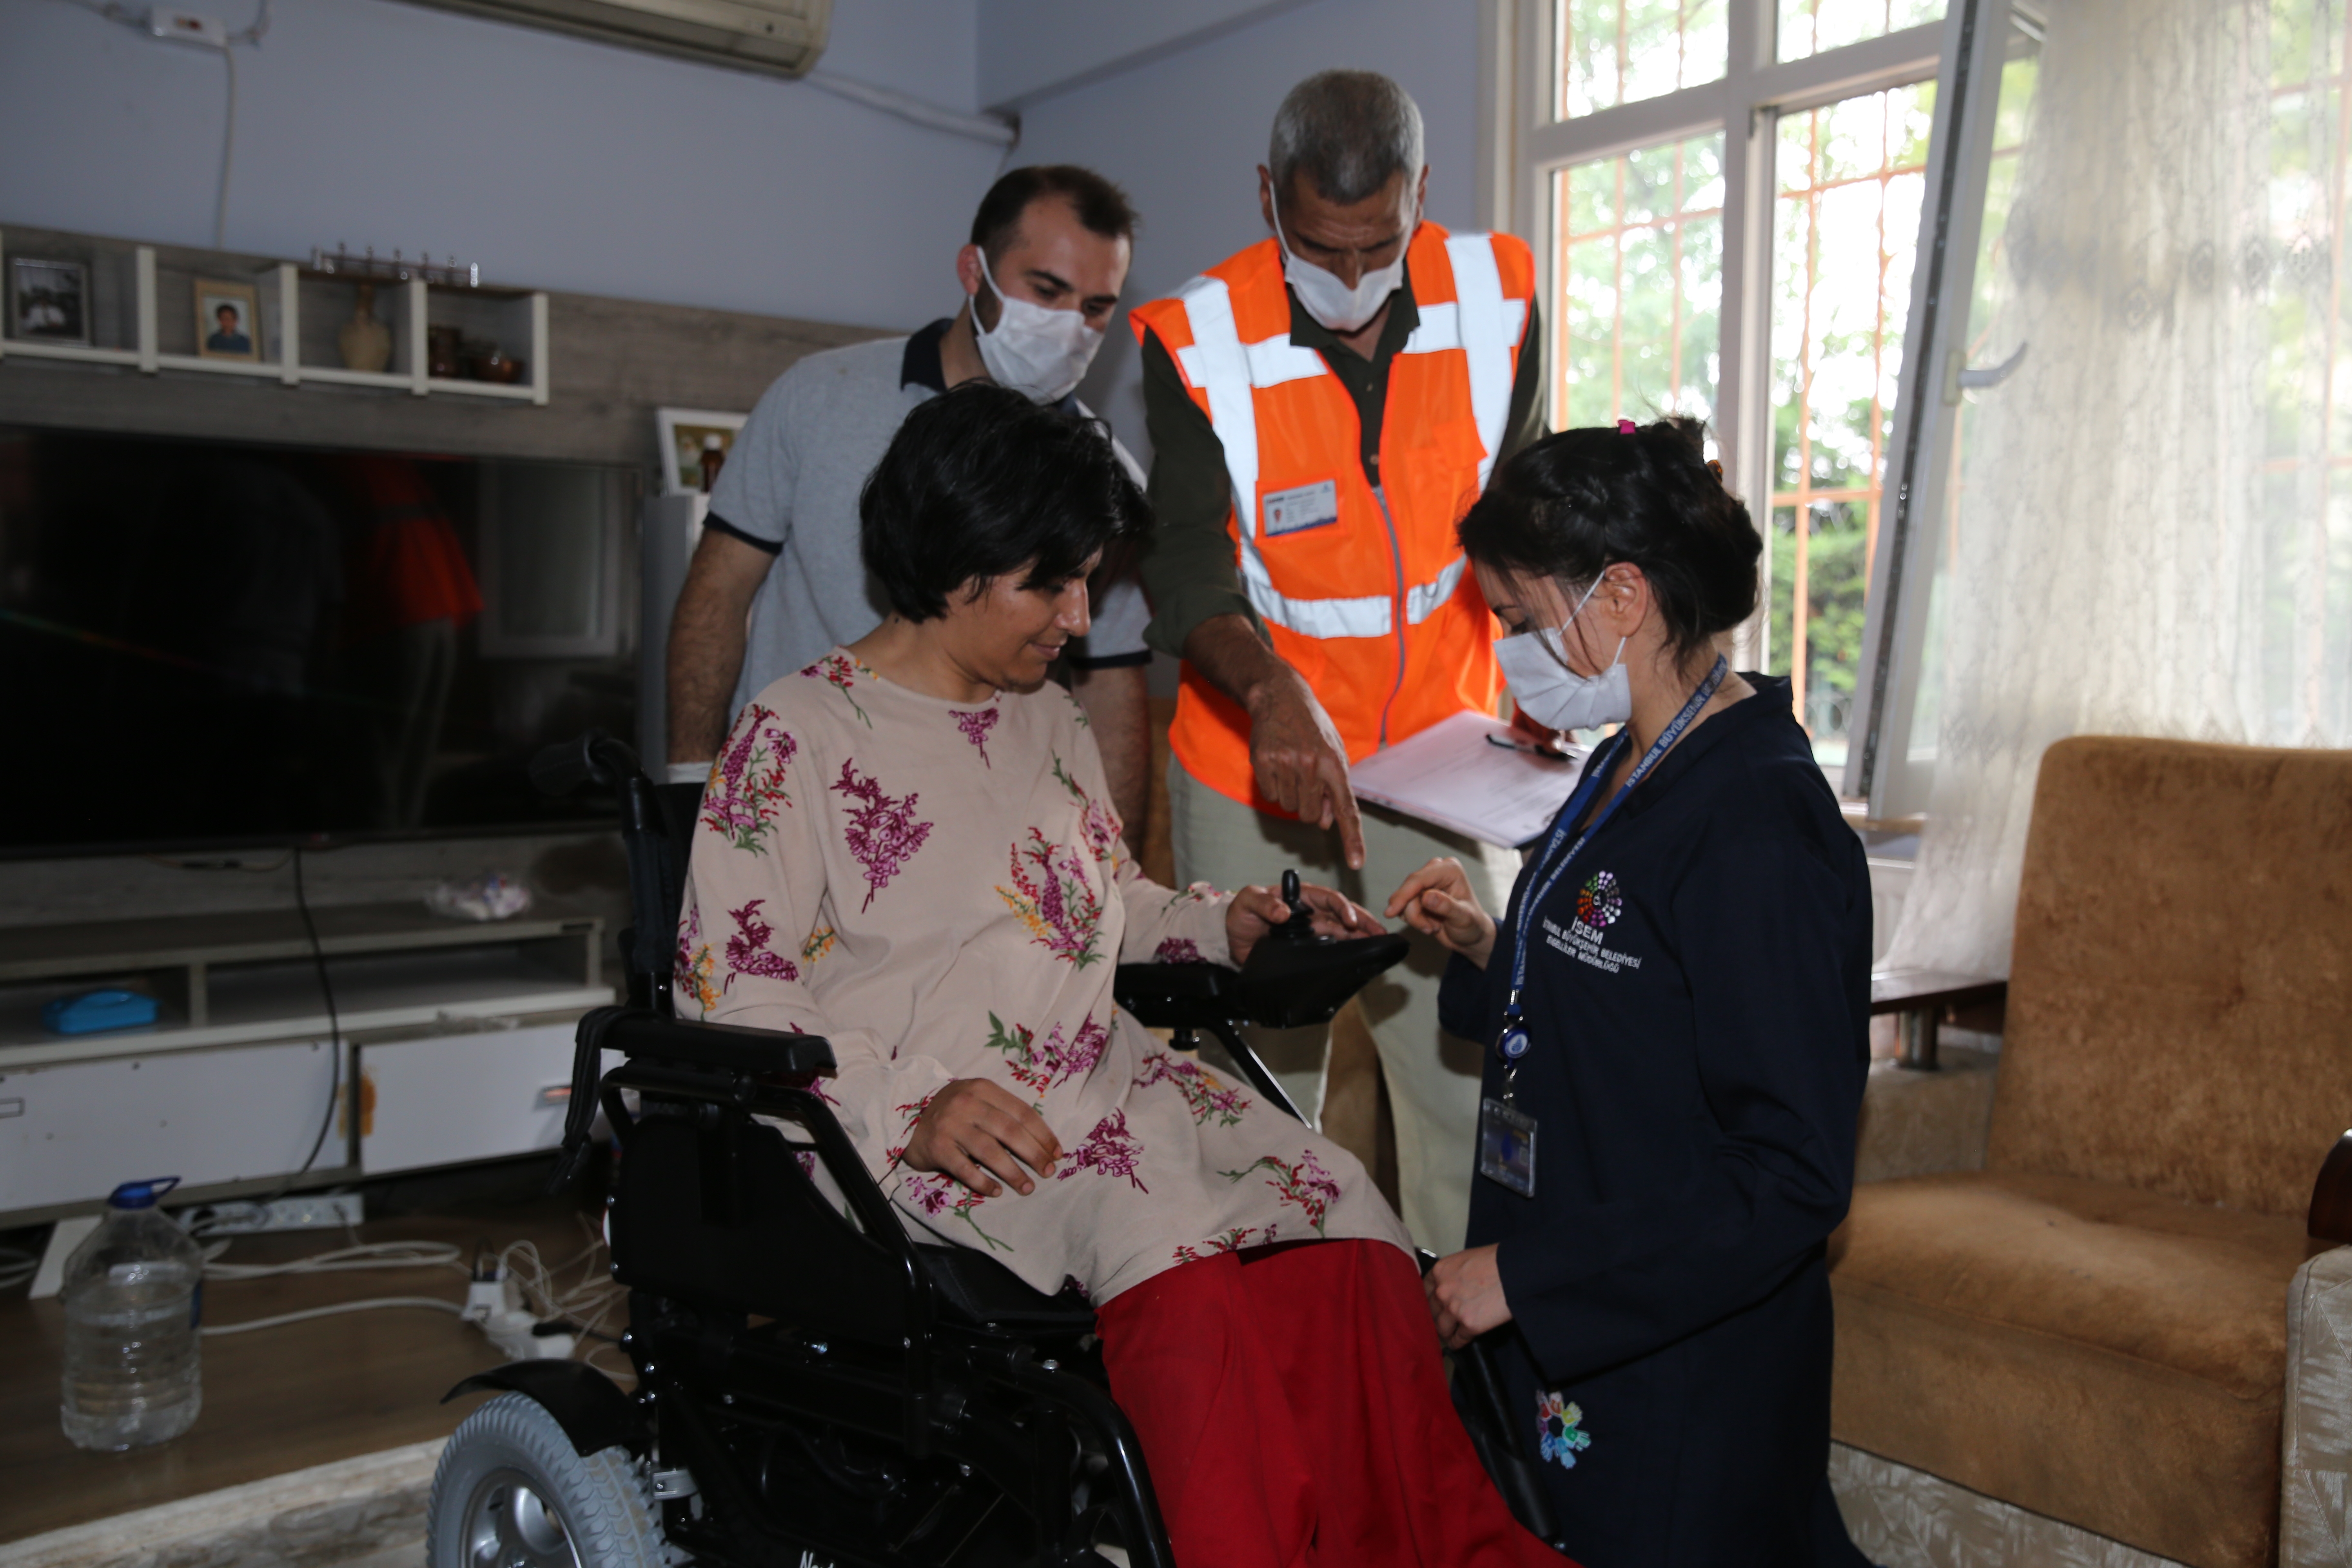 İBB, Hırsızların Mağdur Ettiği Engelli Kadının Yardımına Koştu